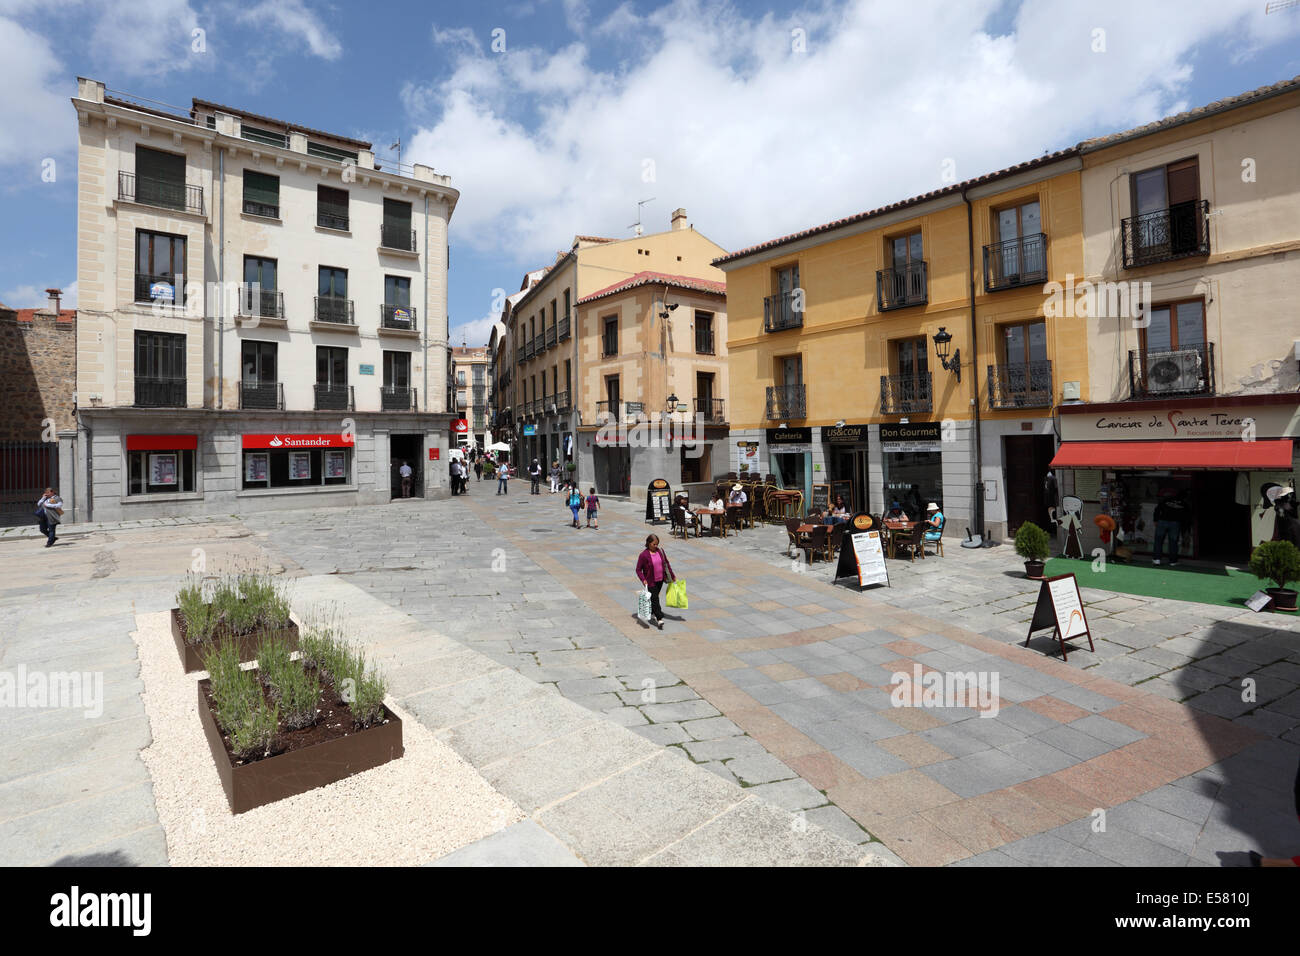 Square in the old town of Avila, Castilla y Leon, Spain Stock Photo